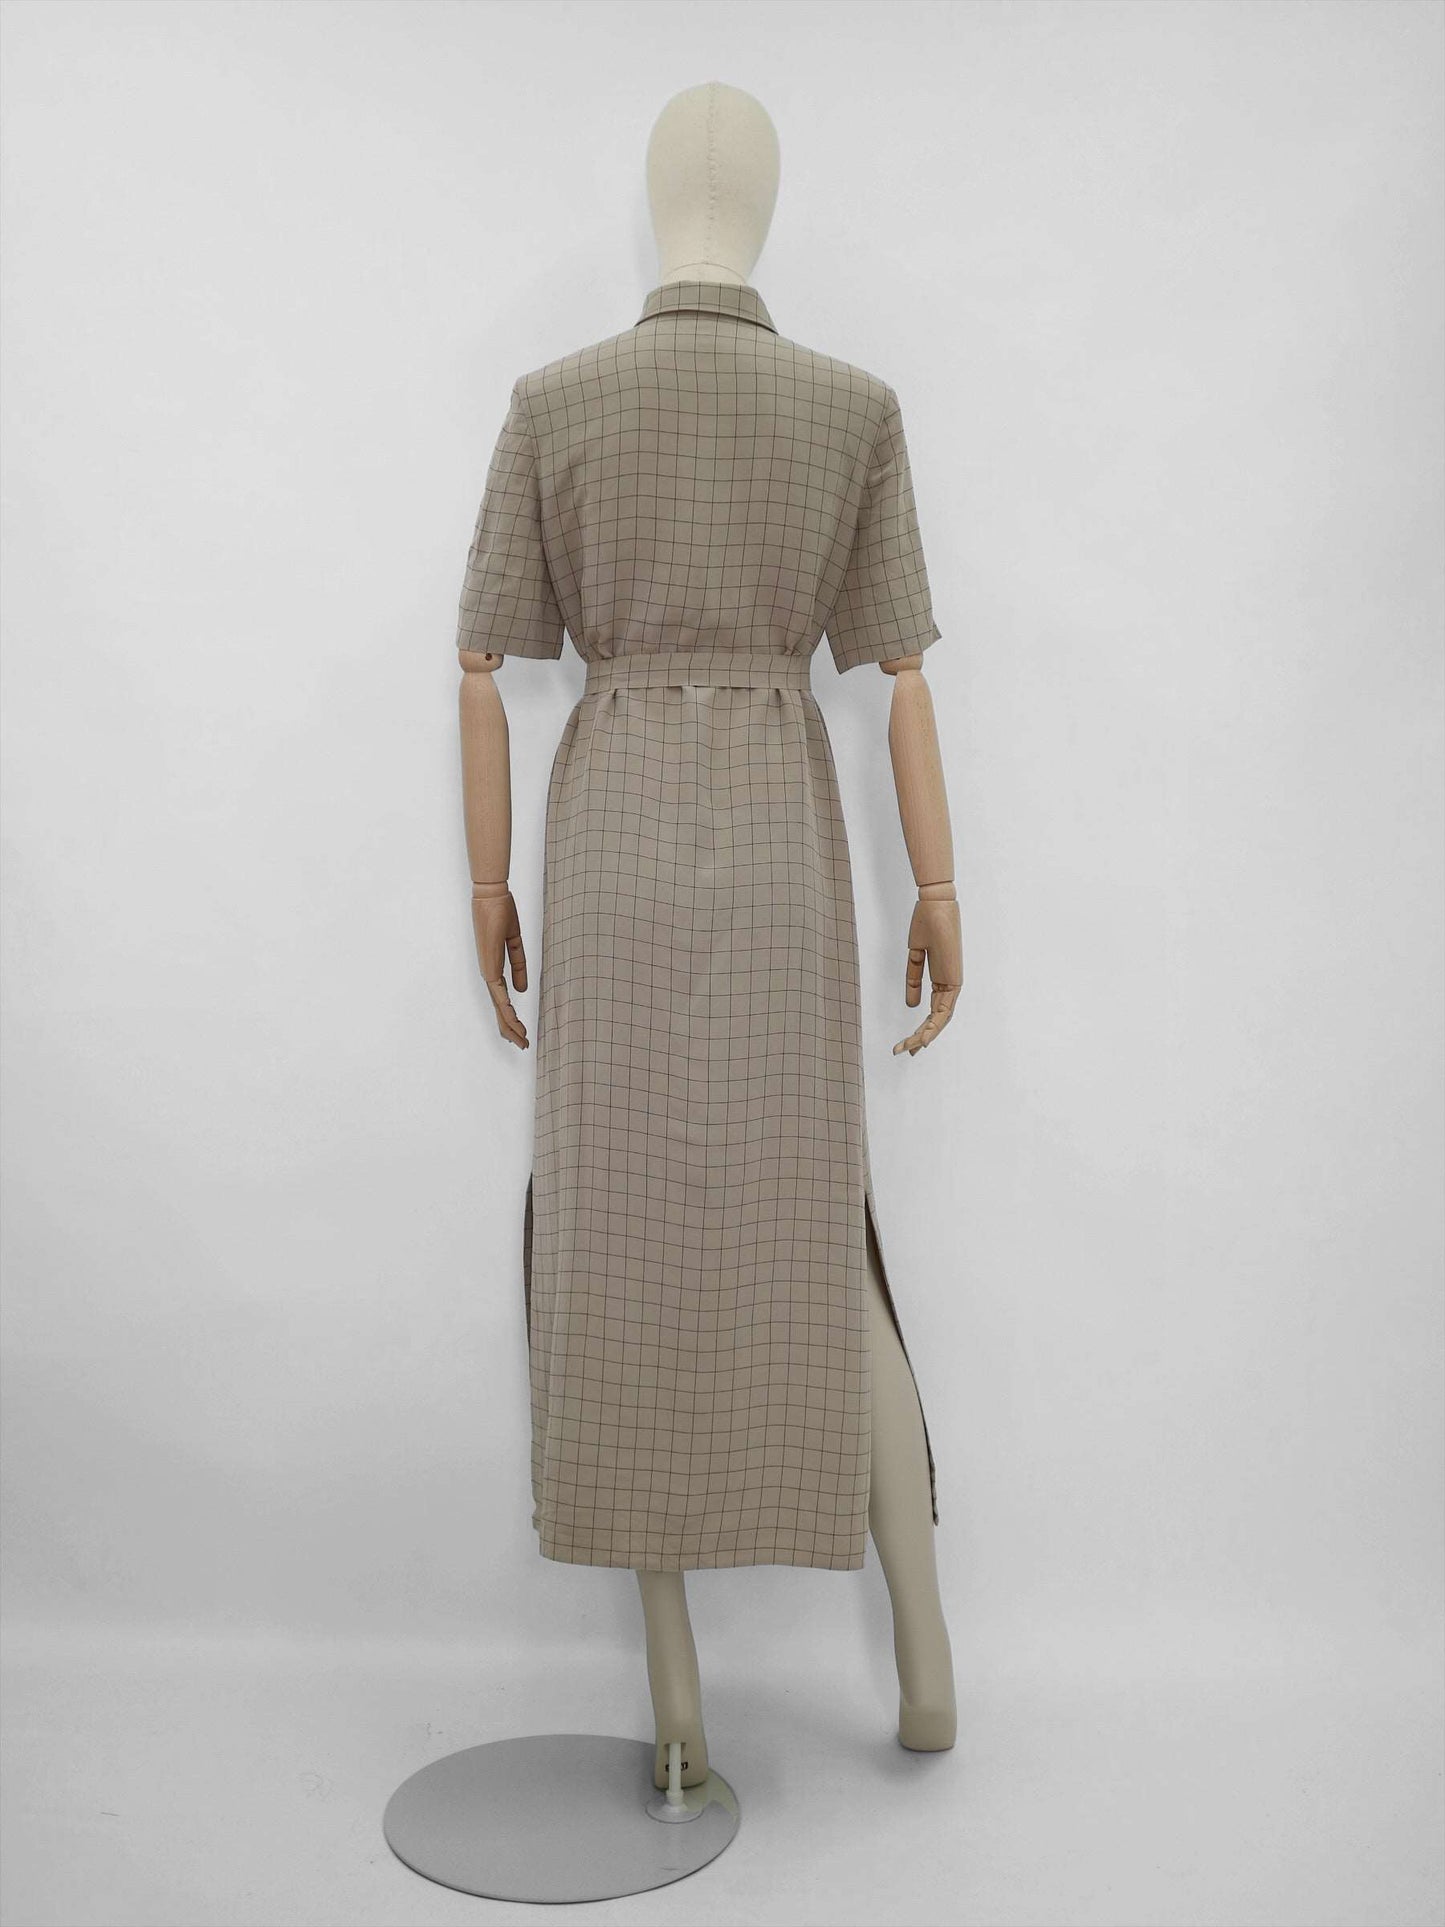 Vintage Dress by Fink